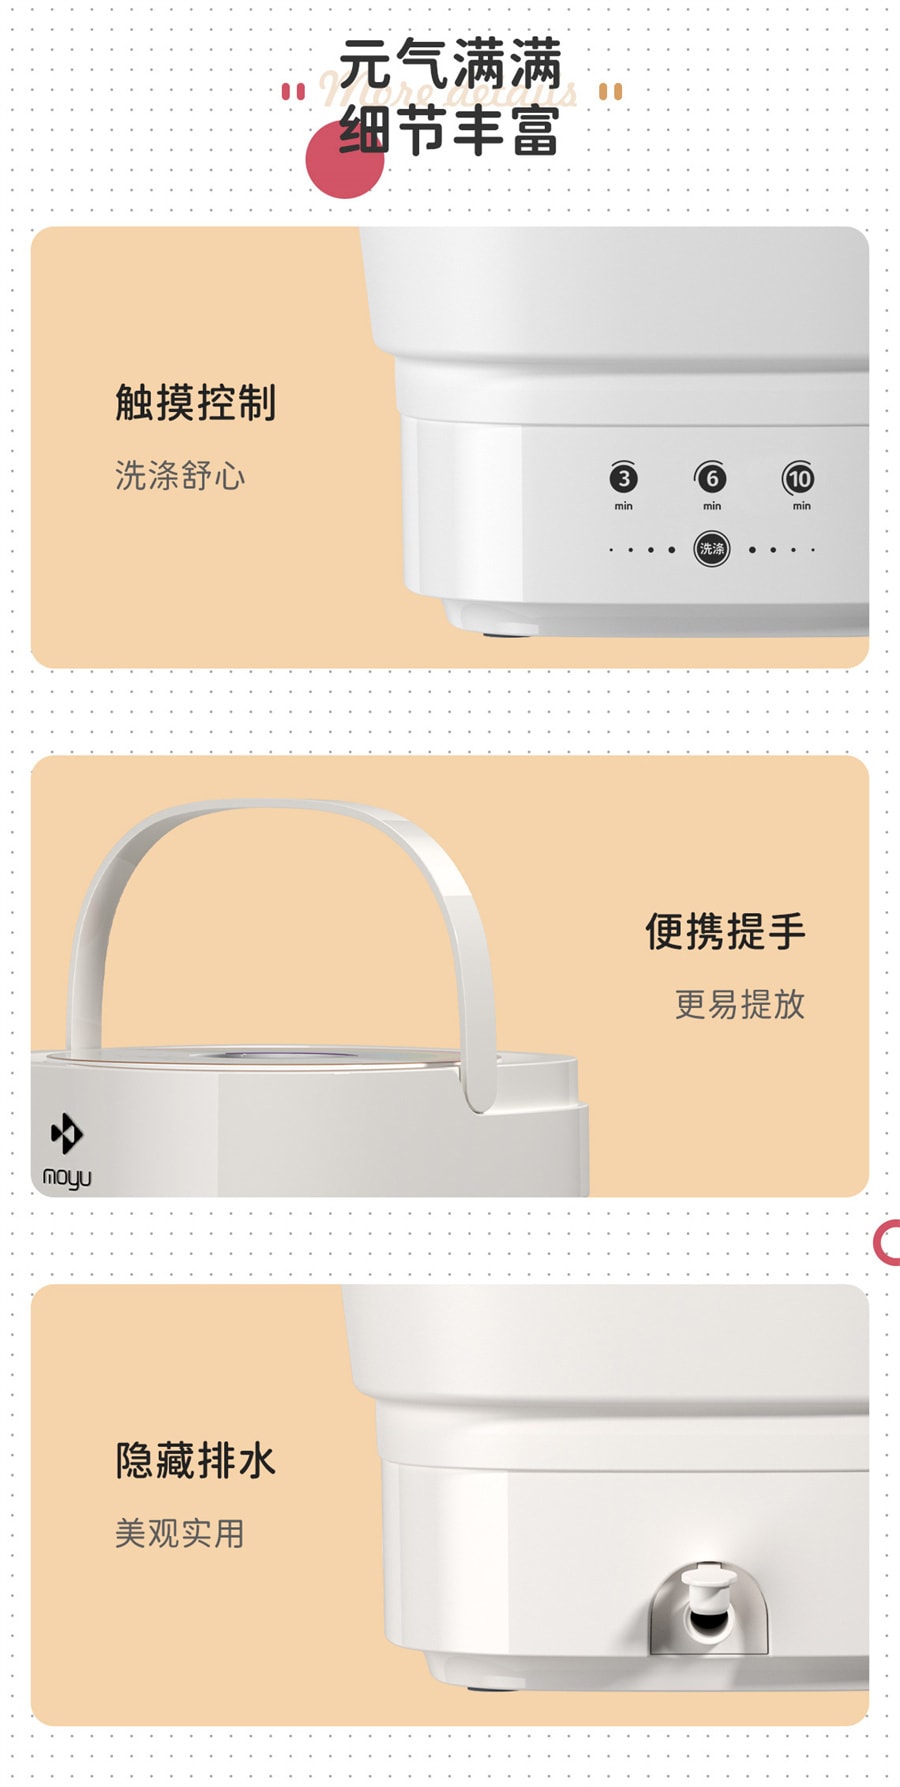 【中国直邮】摩鱼 迷你折叠洗衣机 便携式 家用小型 甜甜圈款 1件